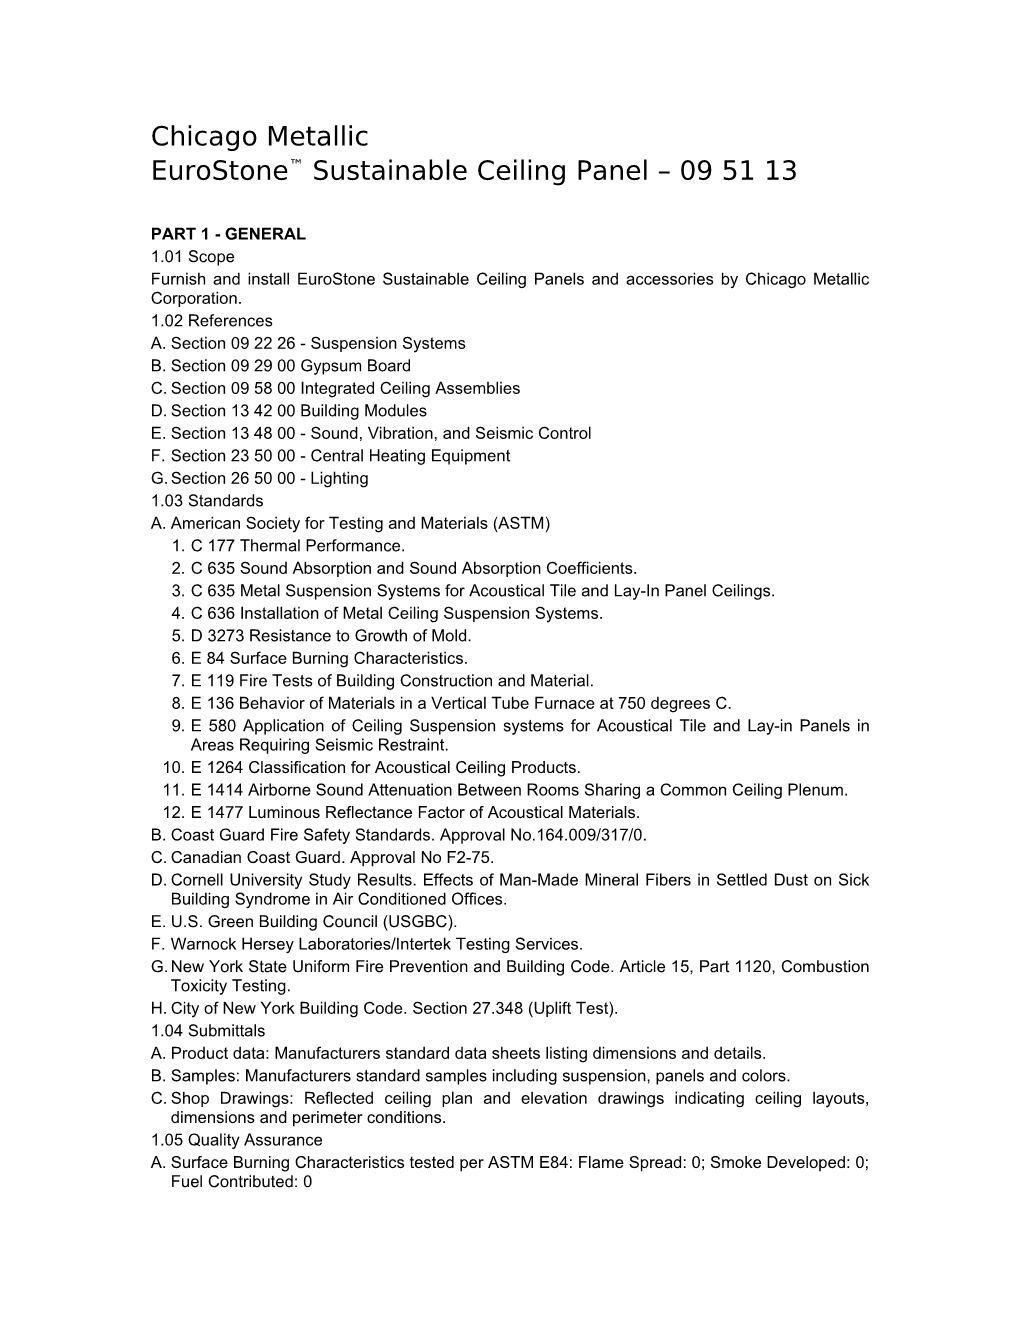 Eurostone Sustainable Ceiling Panel 09 51 13